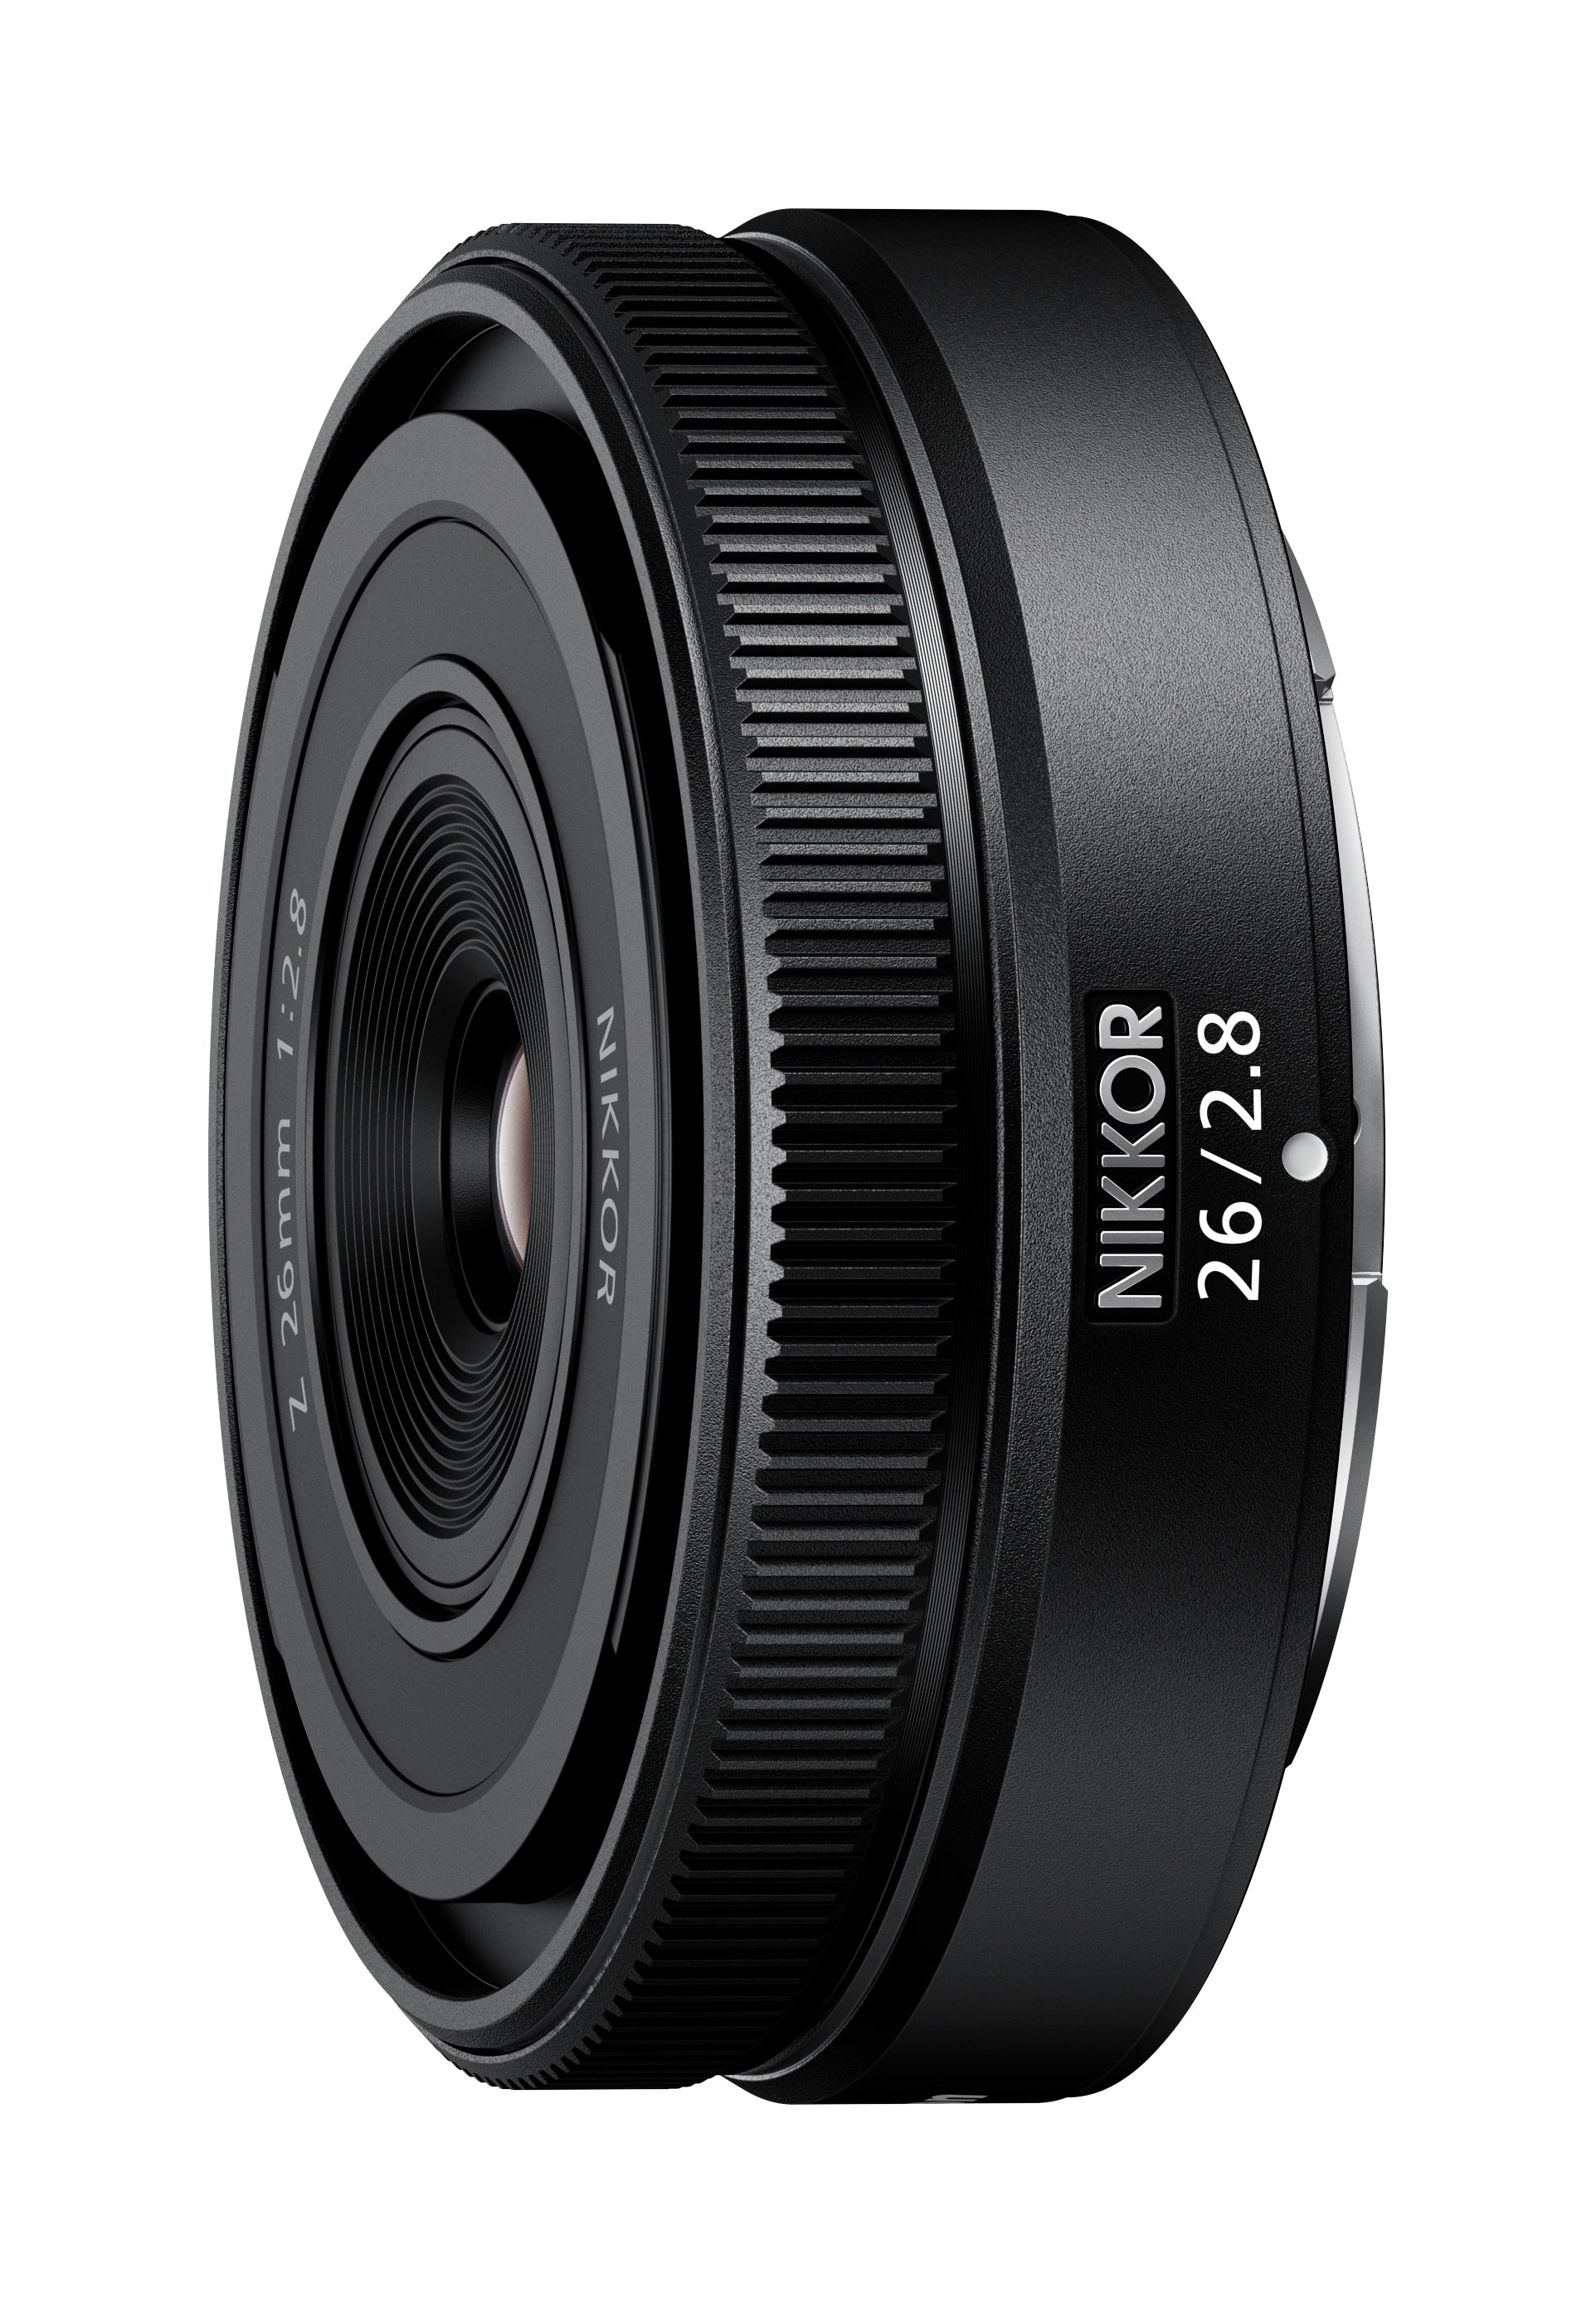 Product Image of Nikon NIKKOR Z 26mm f2.8 Lens